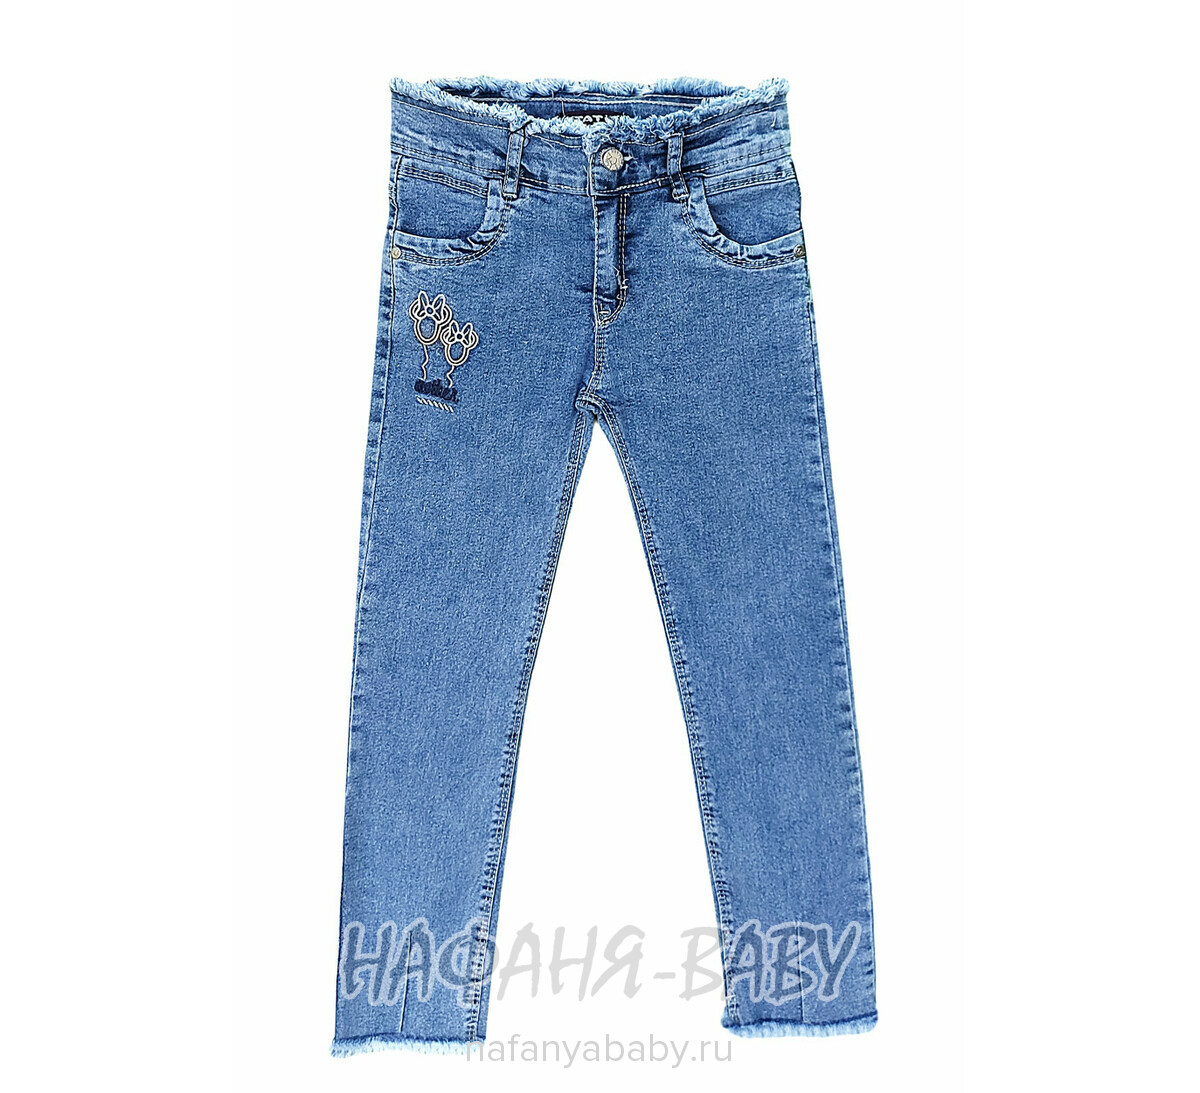 Детские джинсы TATI Jeans арт:3125 для девочки от 3 до 7 лет, оптом Турция